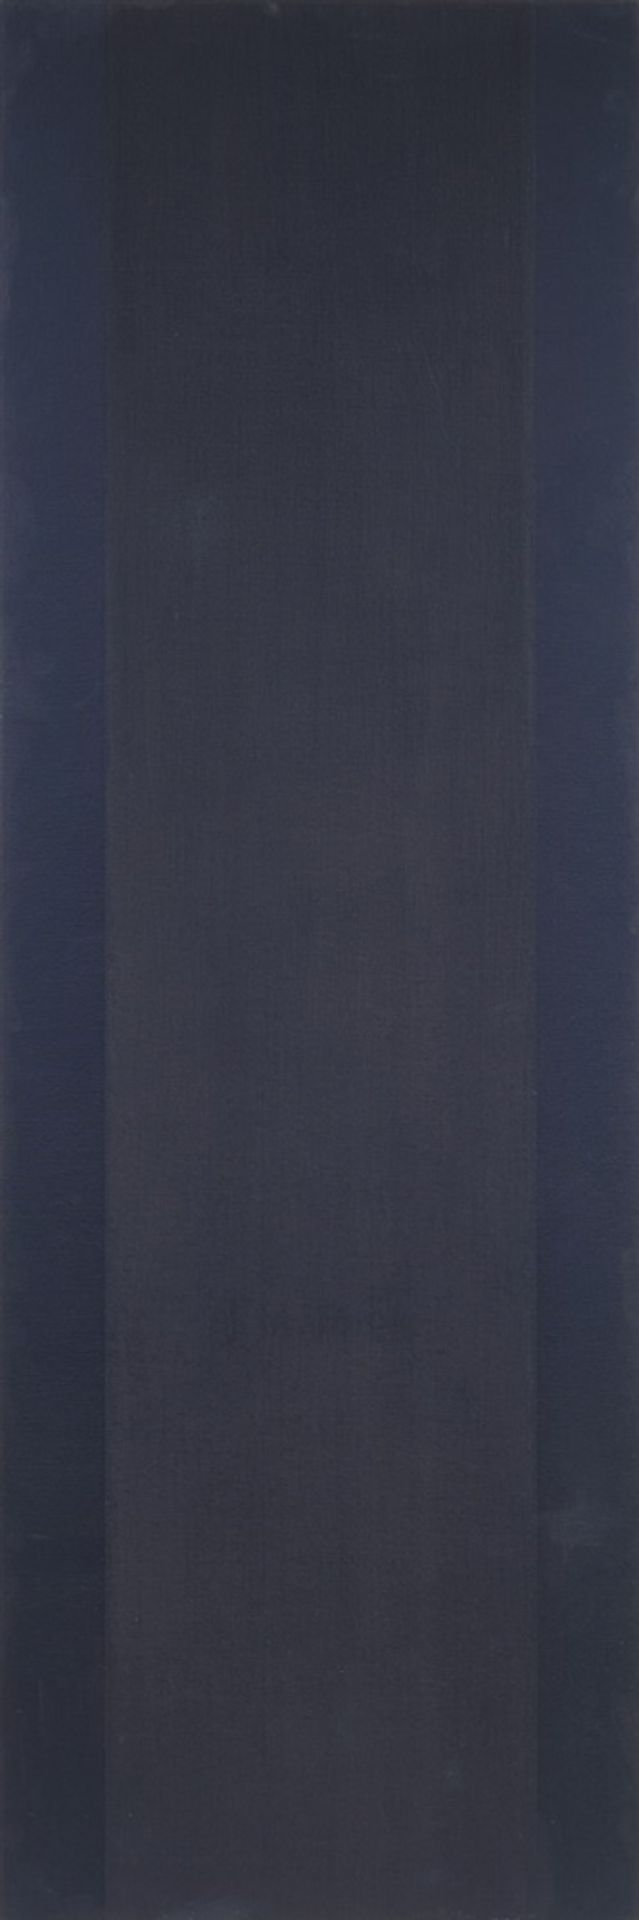 FRANK BADUR 1944 OHNE TITEL 1978 Triptychon. 3 Gemälde, Öl auf Leinwand, auf Holz. Jeweils